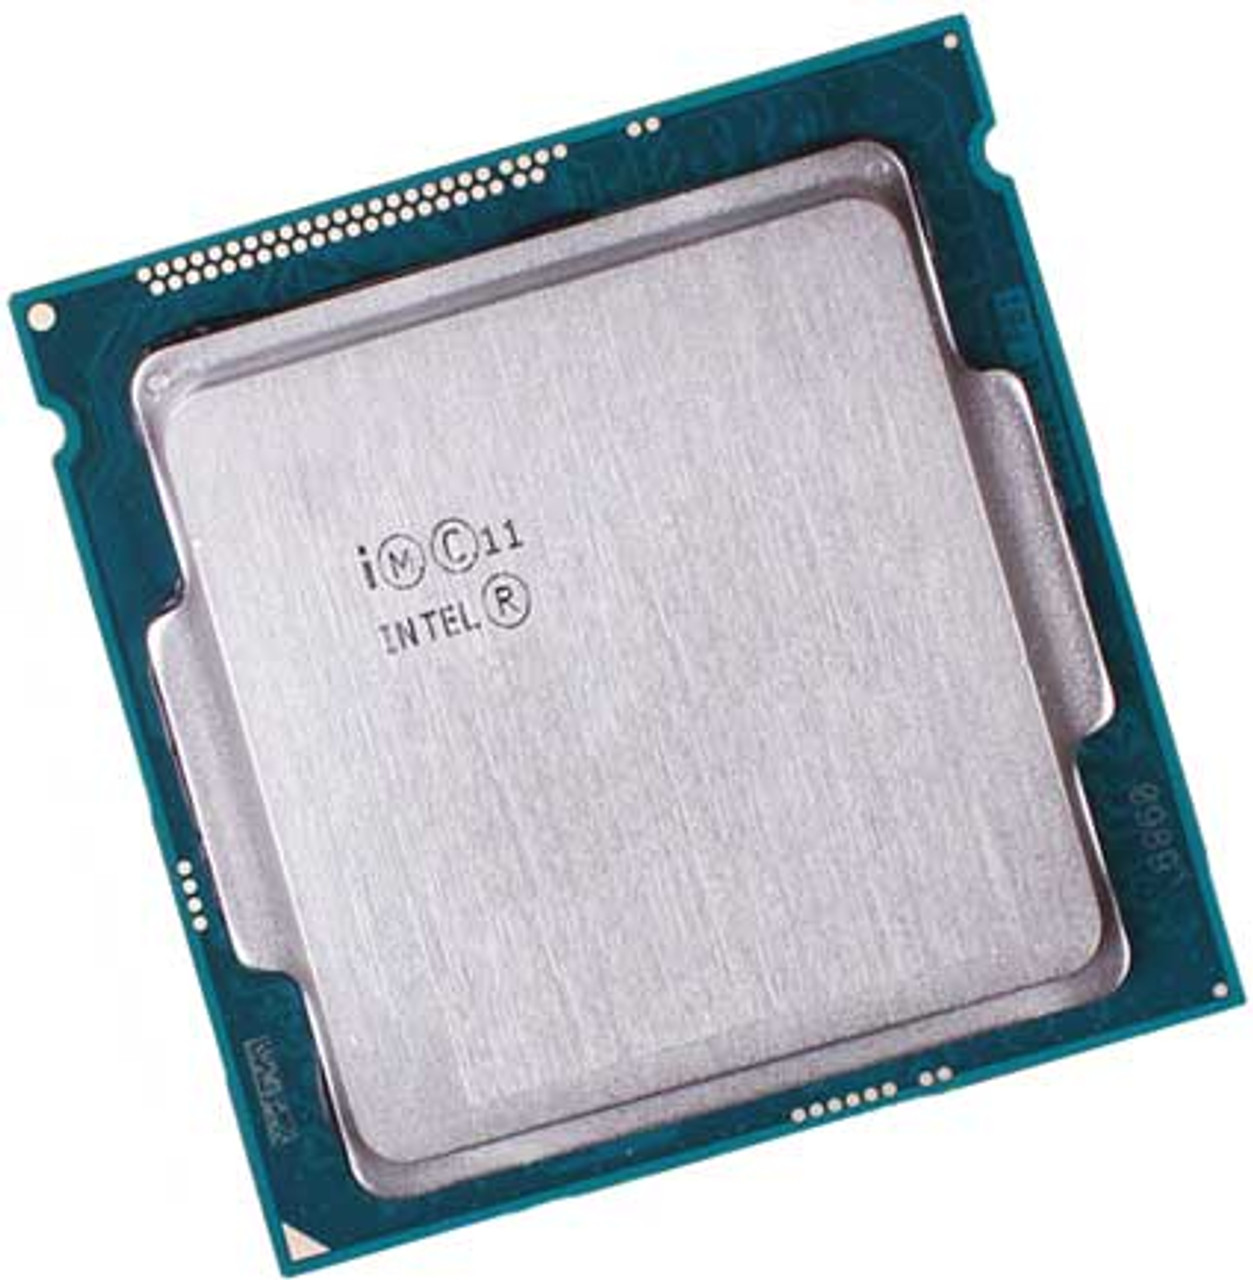 Intel CPU Core i3 4160 - CPU